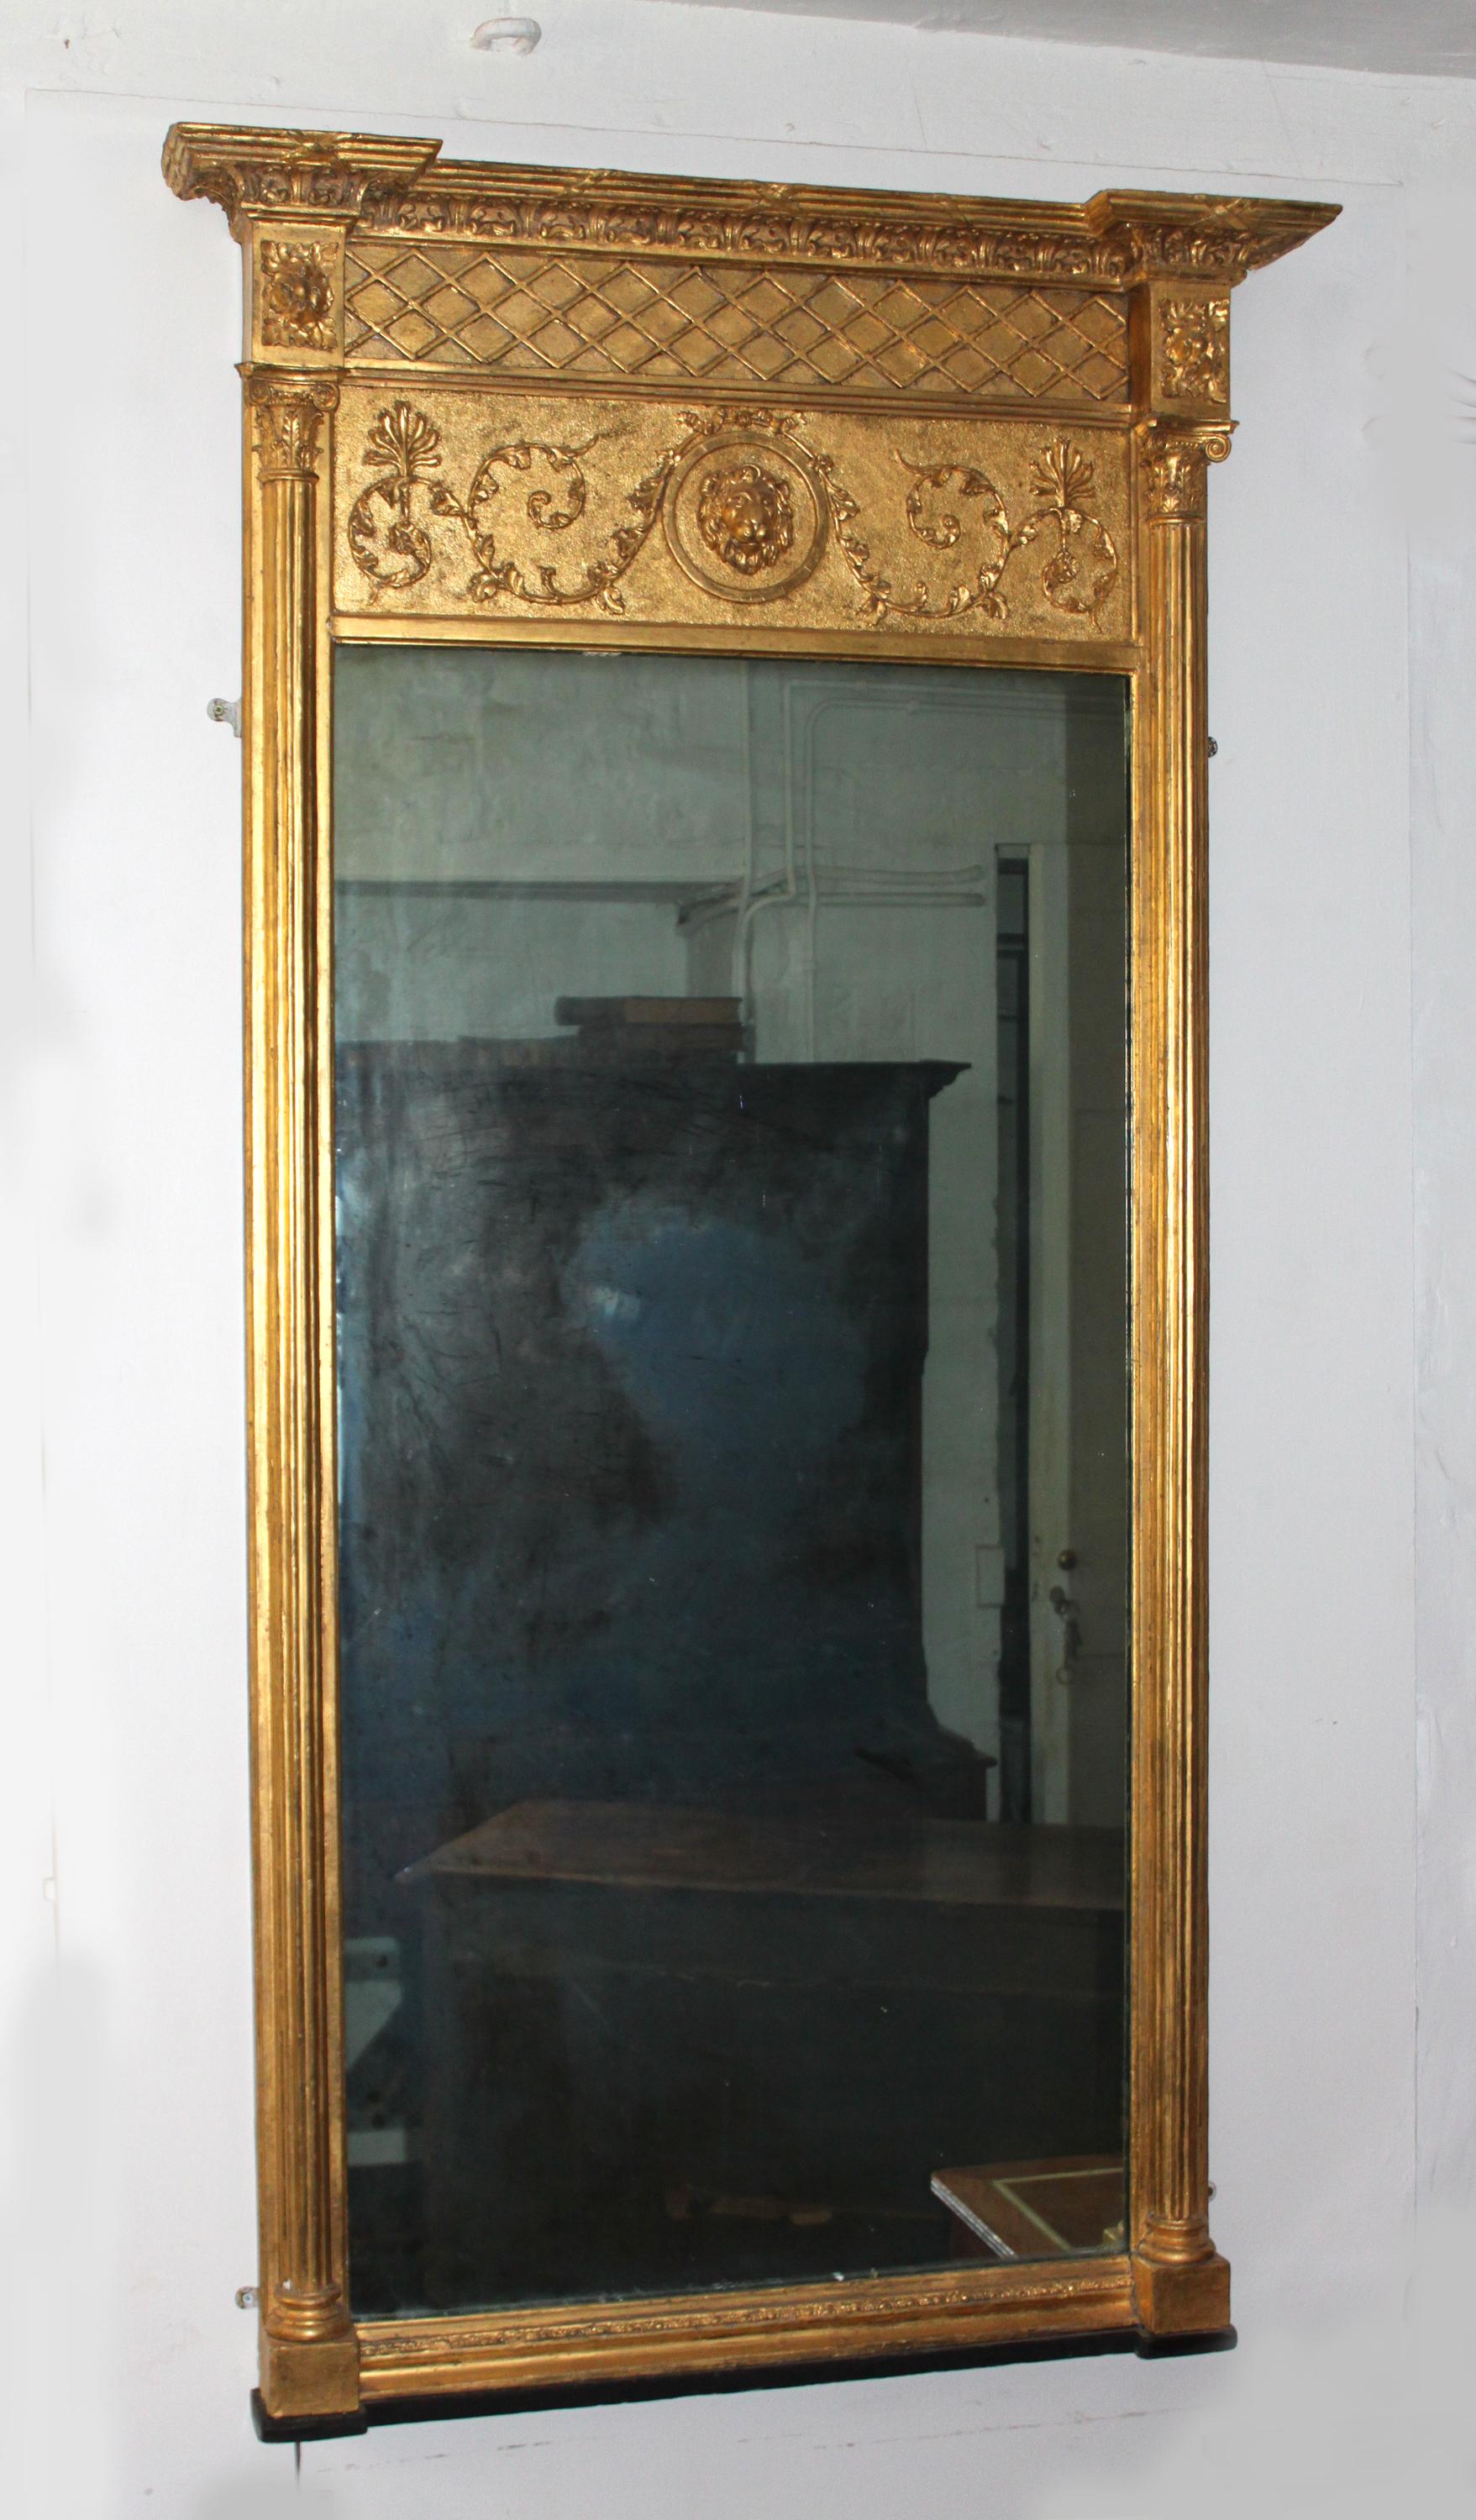 Ein großes vergoldetes Regency-Pierglas von Thomas Fentham aus London. Es ähnelt im Detail dem Glas, das im Pictorial Dictionary of Marked London Furniture 1700-1840, Seite 202, Abb. 341, abgebildet ist, und hat feine geschnitzte Kapitelle, eine